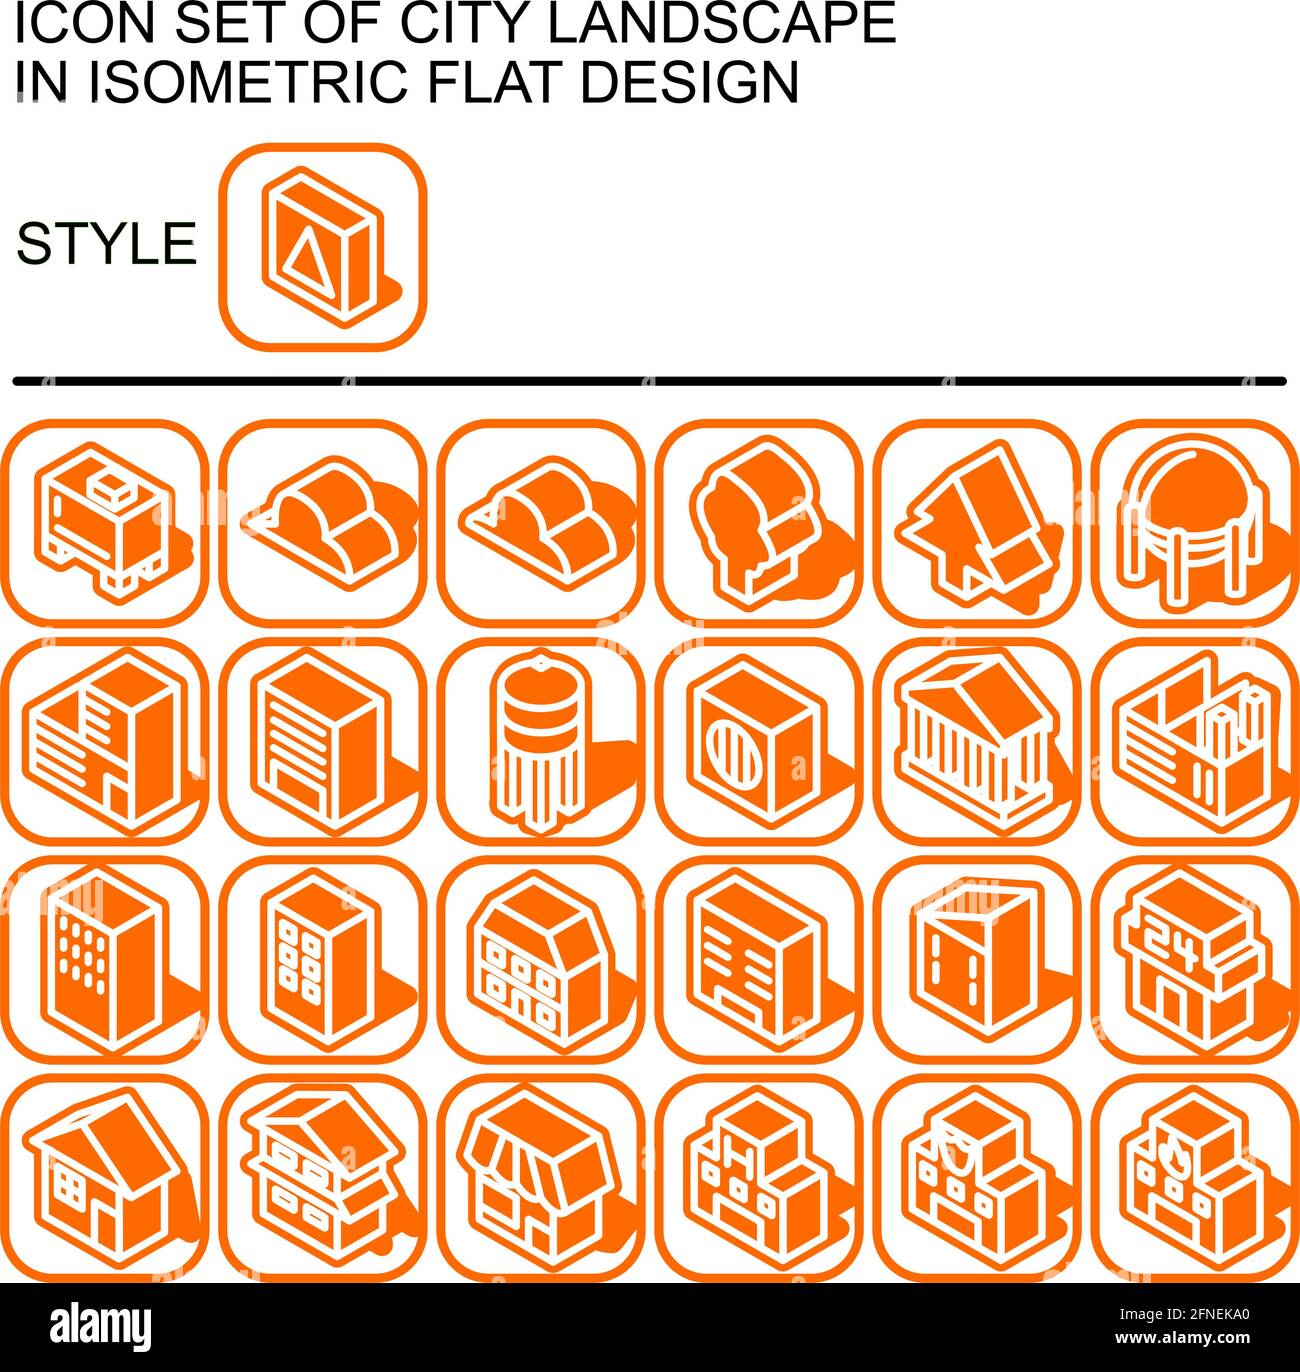 L'icona del paesaggio urbano è impostata in un design piatto isometrico con linee bianche, riempimenti arancioni, forma di un'ombra dell'arancione su un quadrato rotondo di linea arancione e. Illustrazione Vettoriale